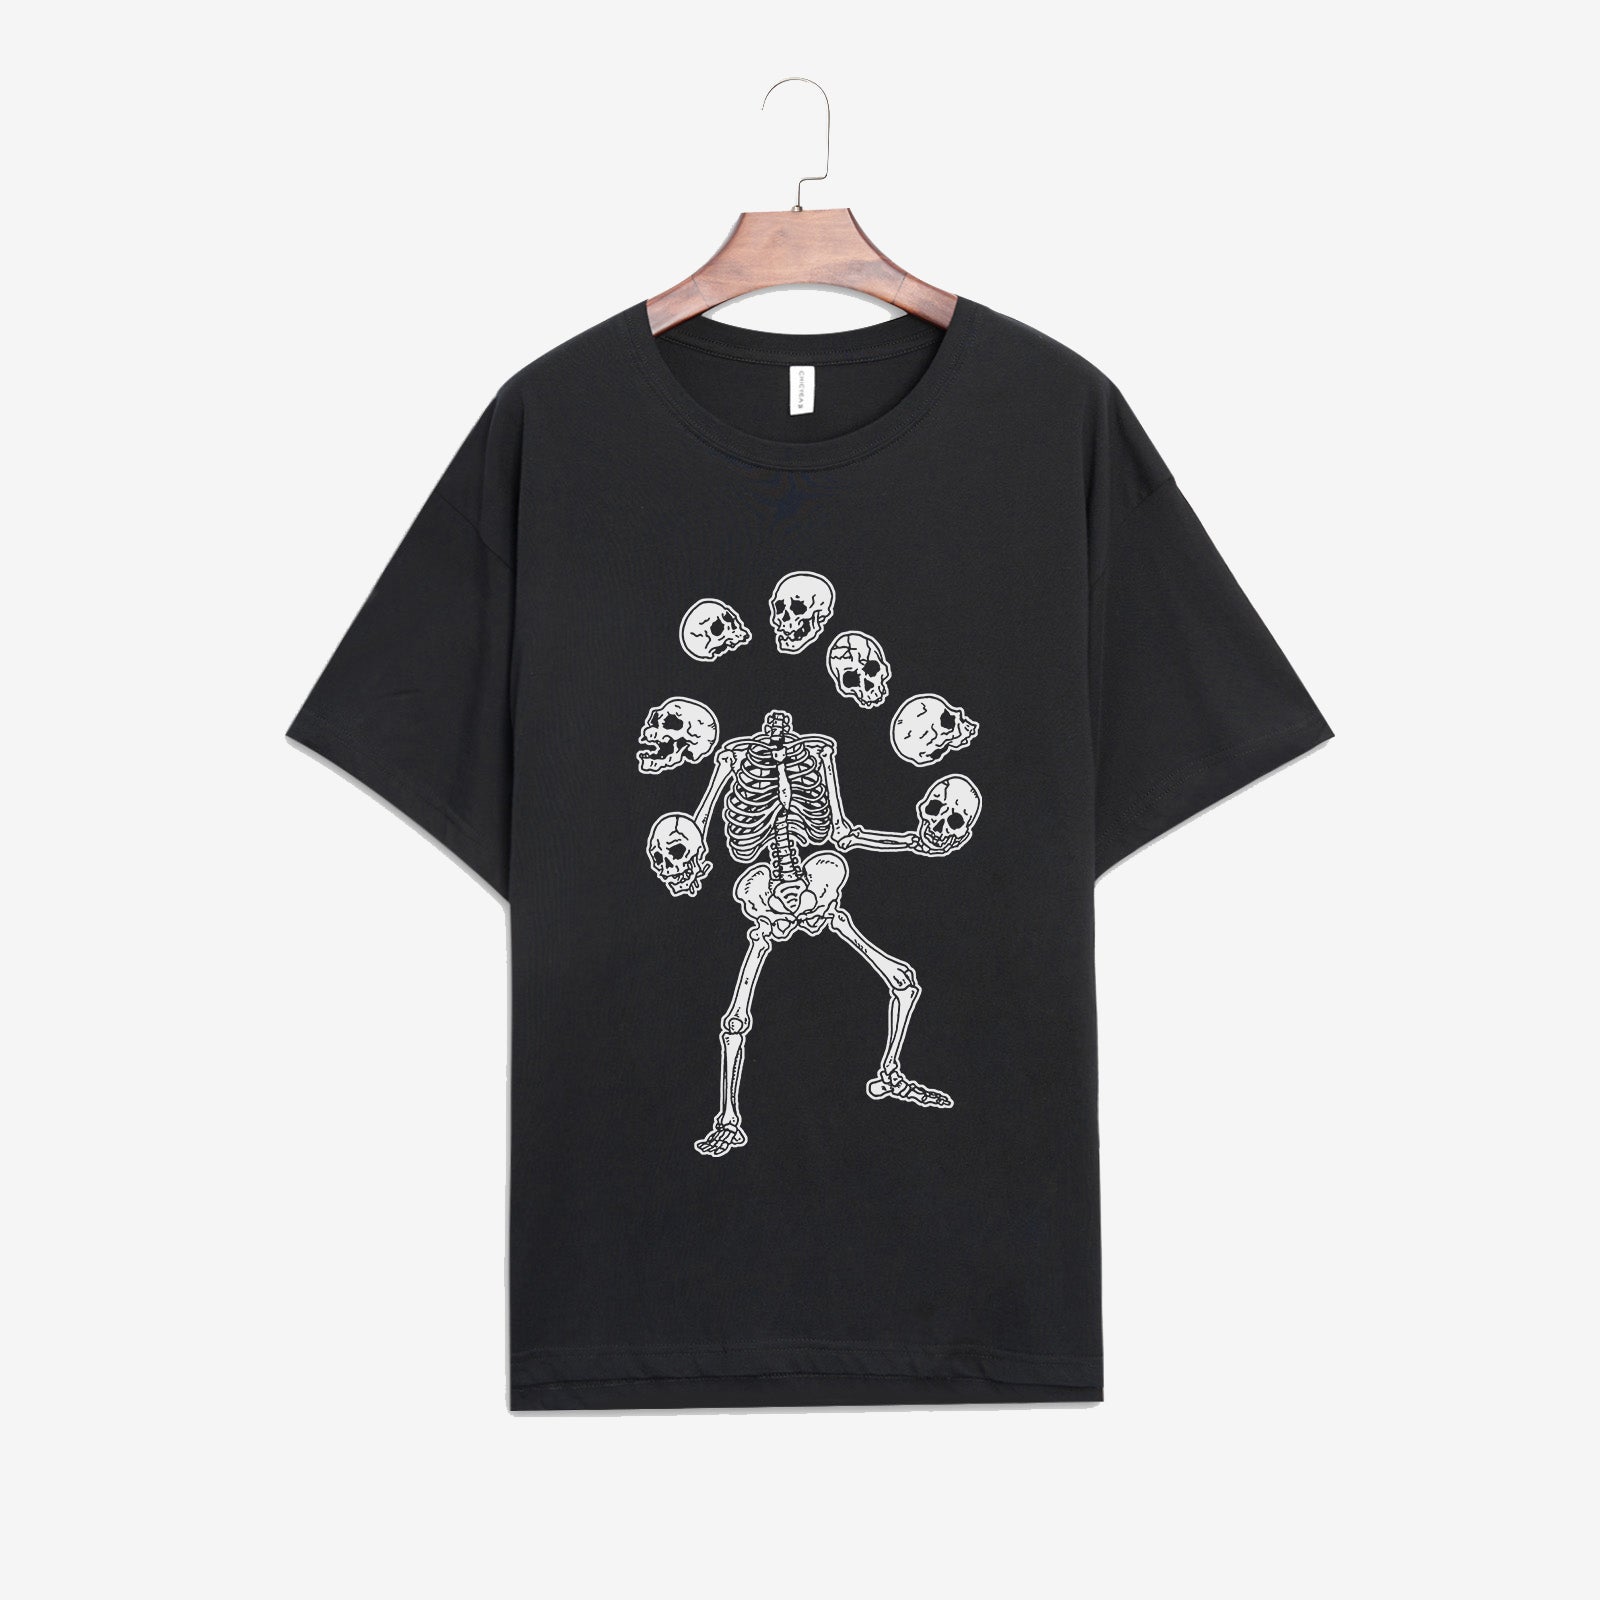 Minnieskull Death Skull Printed Women Black Designer T-Shirt